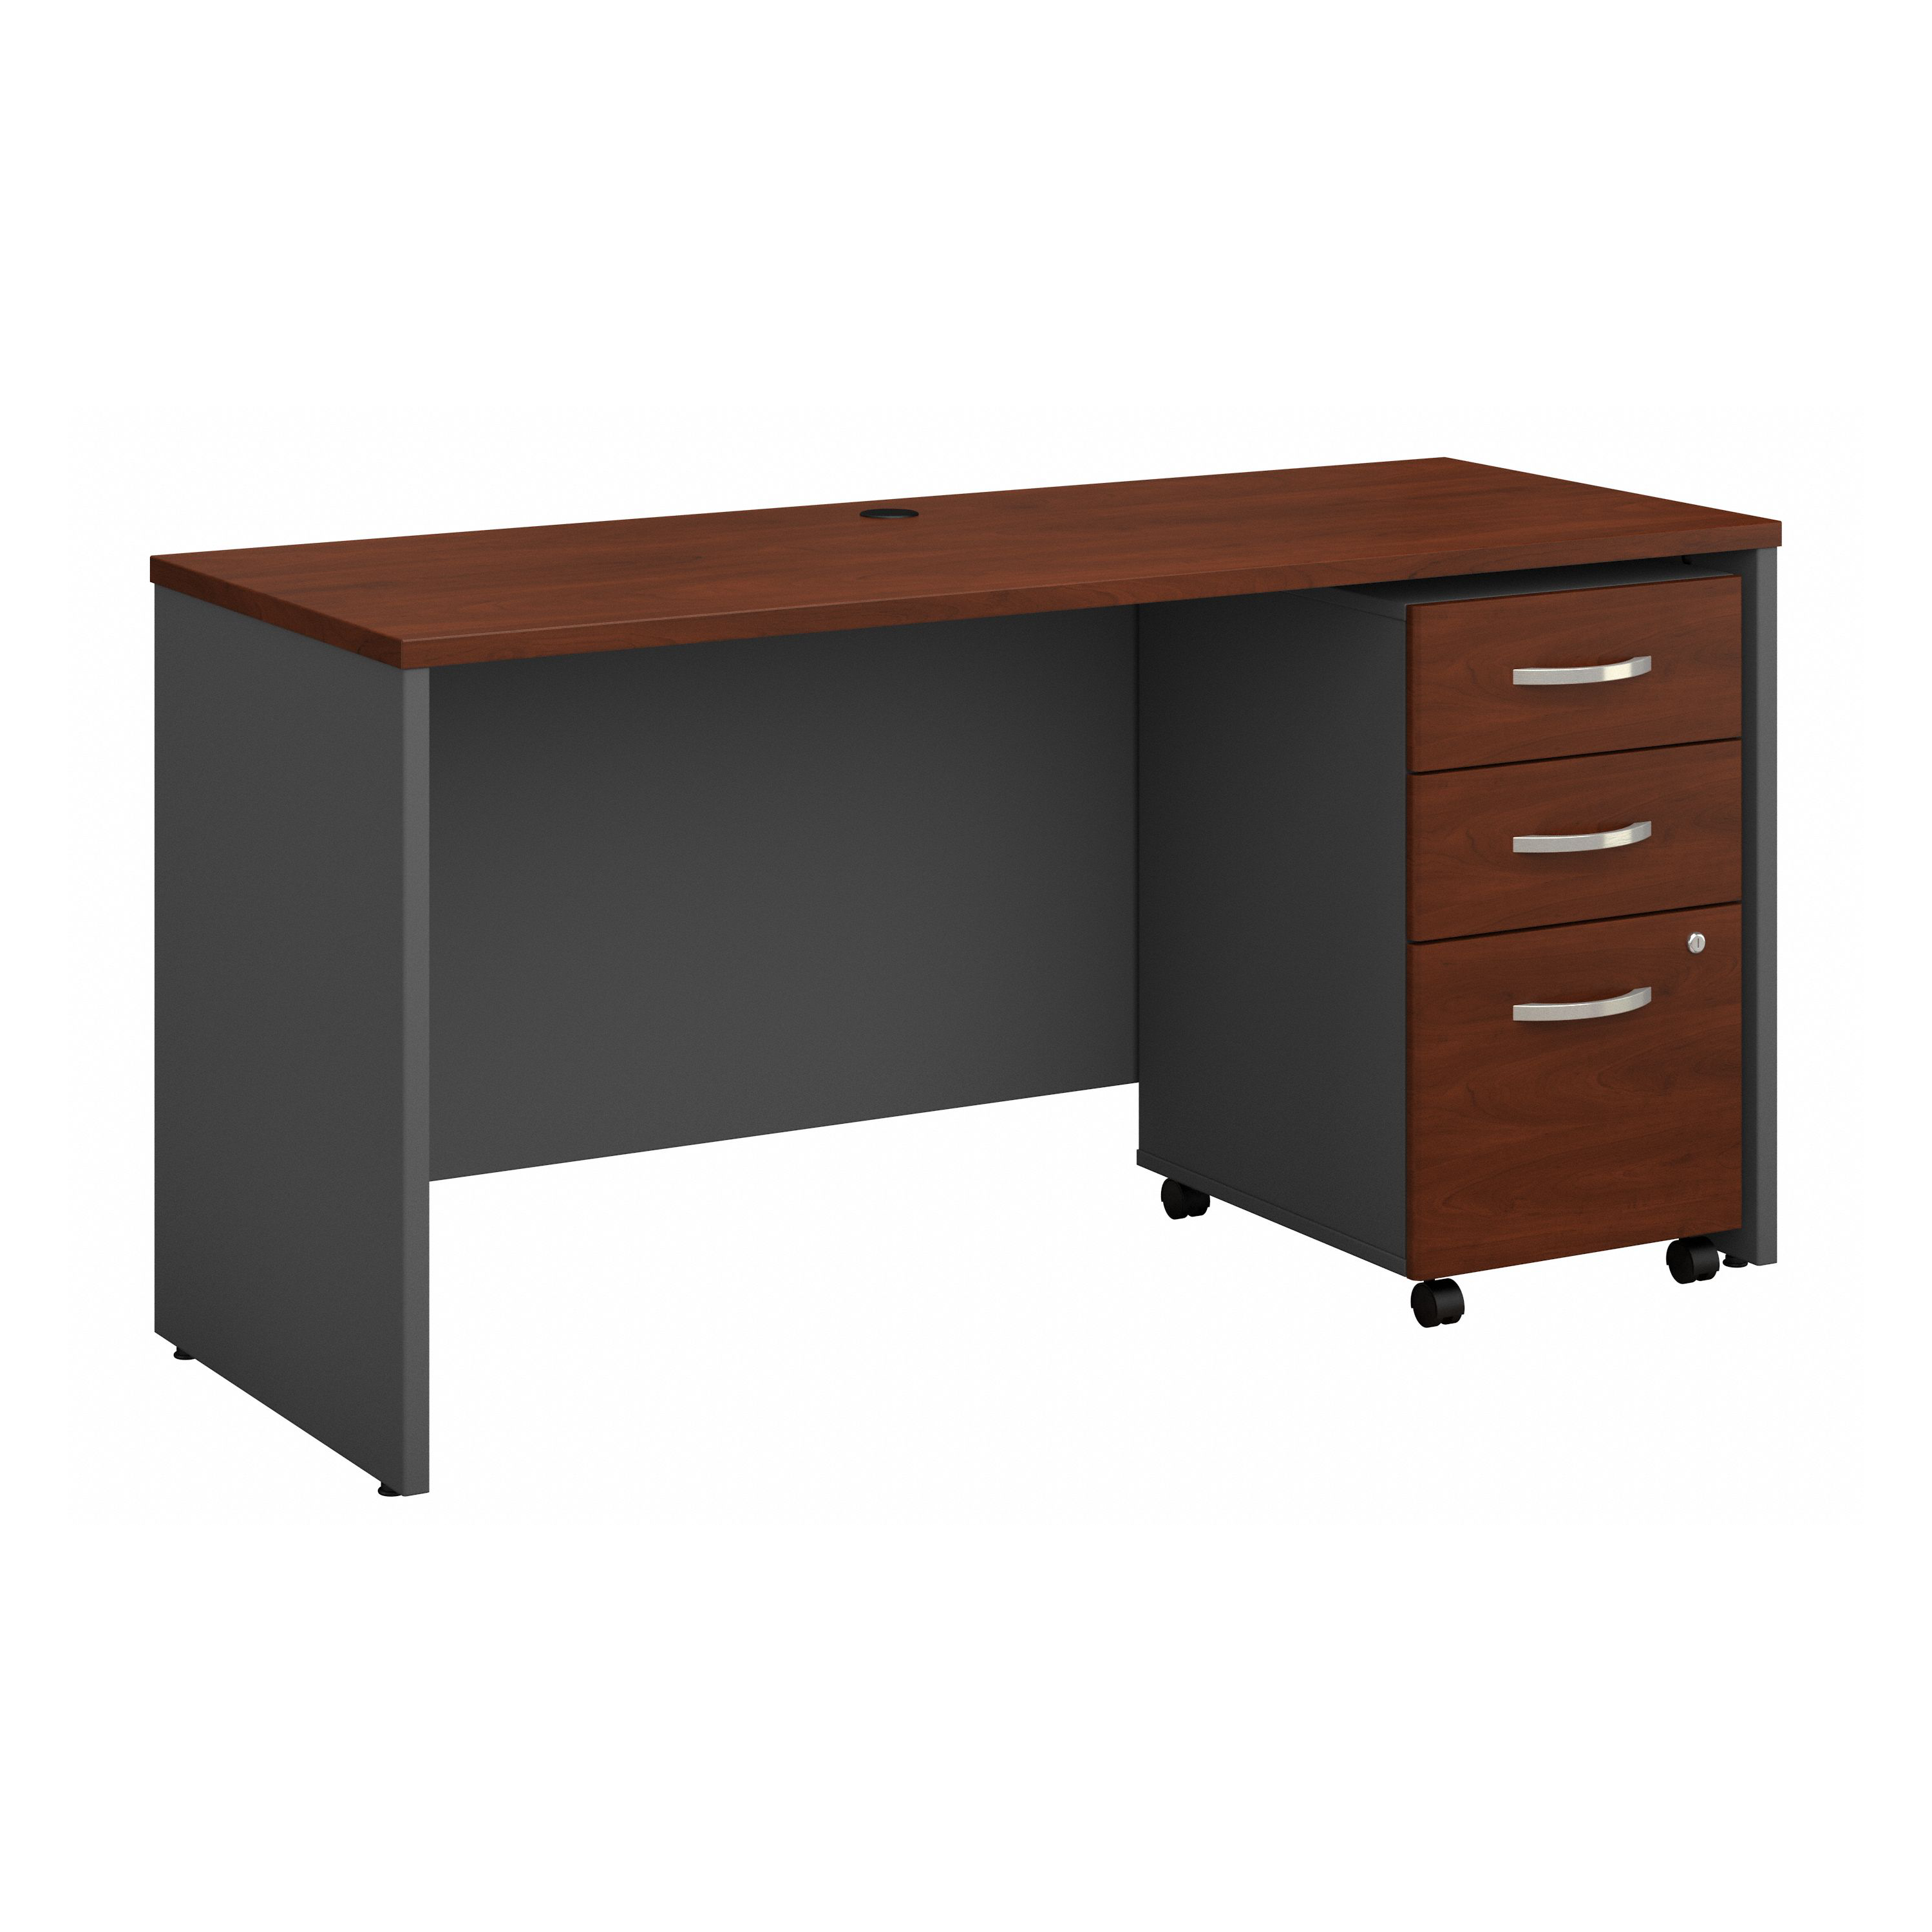 Shop Bush Business Furniture Series C 60W x 24D Office Desk with Mobile File Cabinet 02 SRC025HCSU #color_hansen cherry